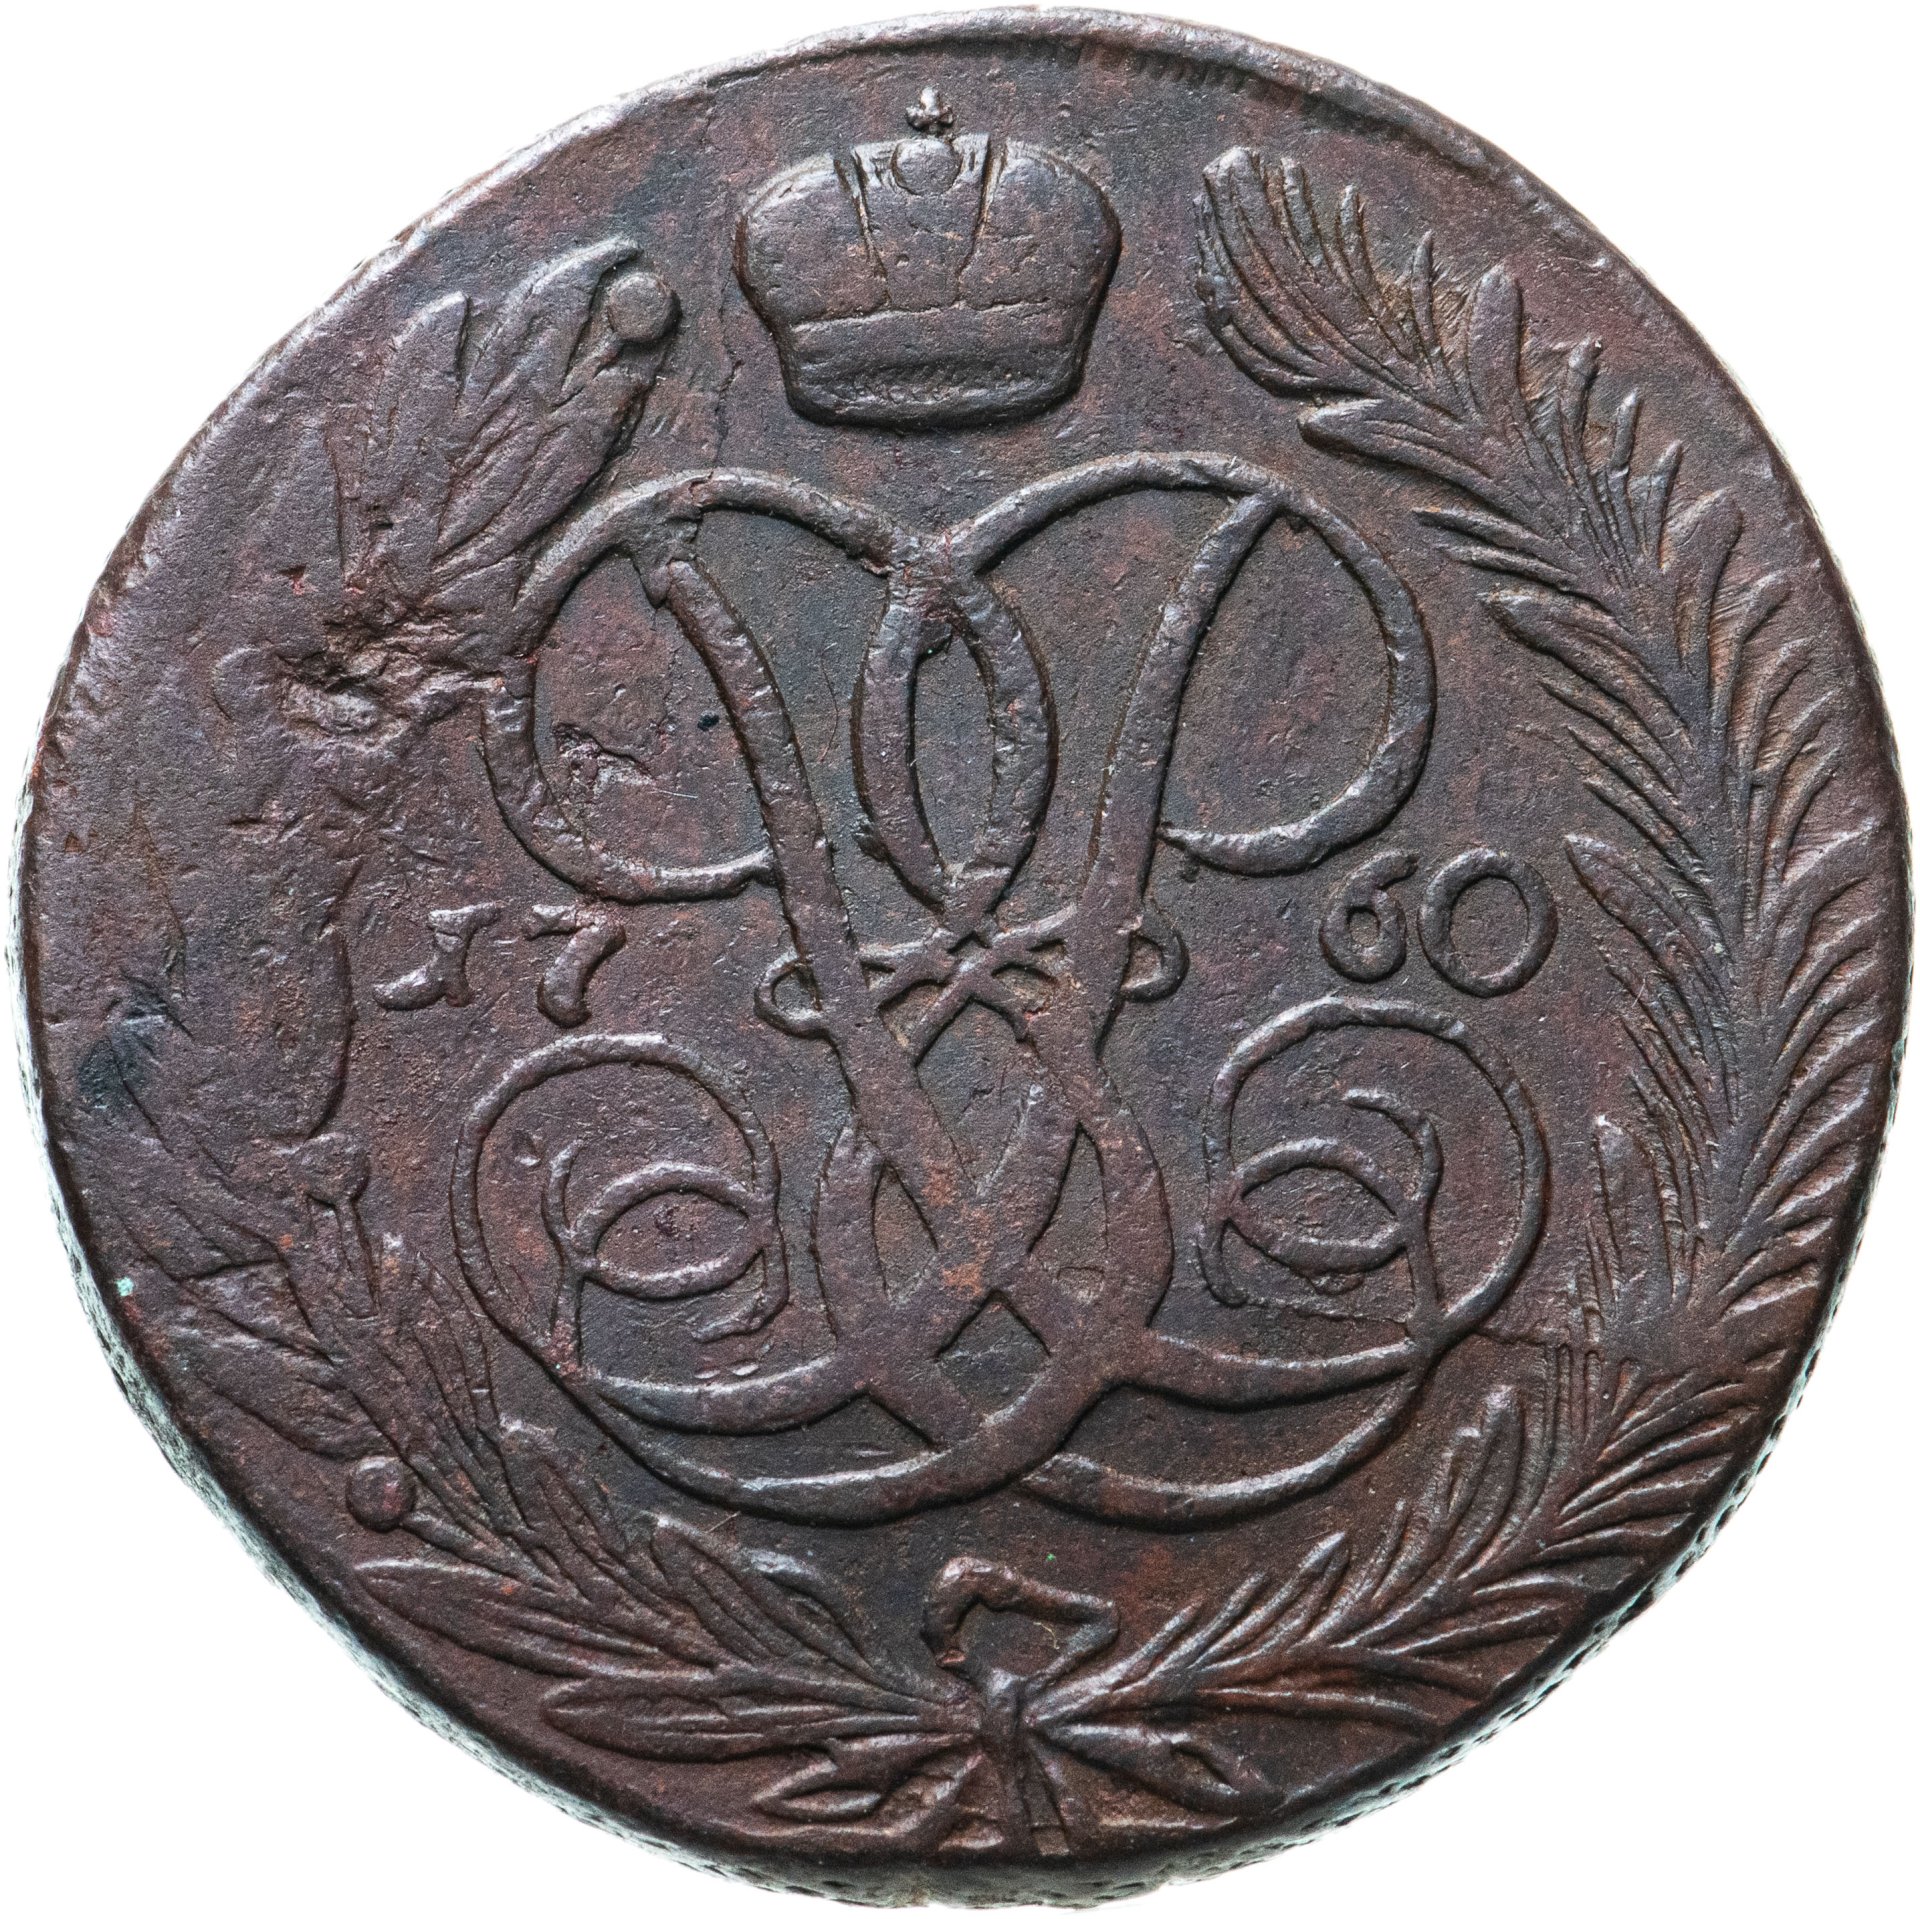 Монеты 1700 цены. 5 Копеек 1759 мм. 5 Копеек 1753. Медные монеты 1700-1800 года. 20 Копеек 1753.